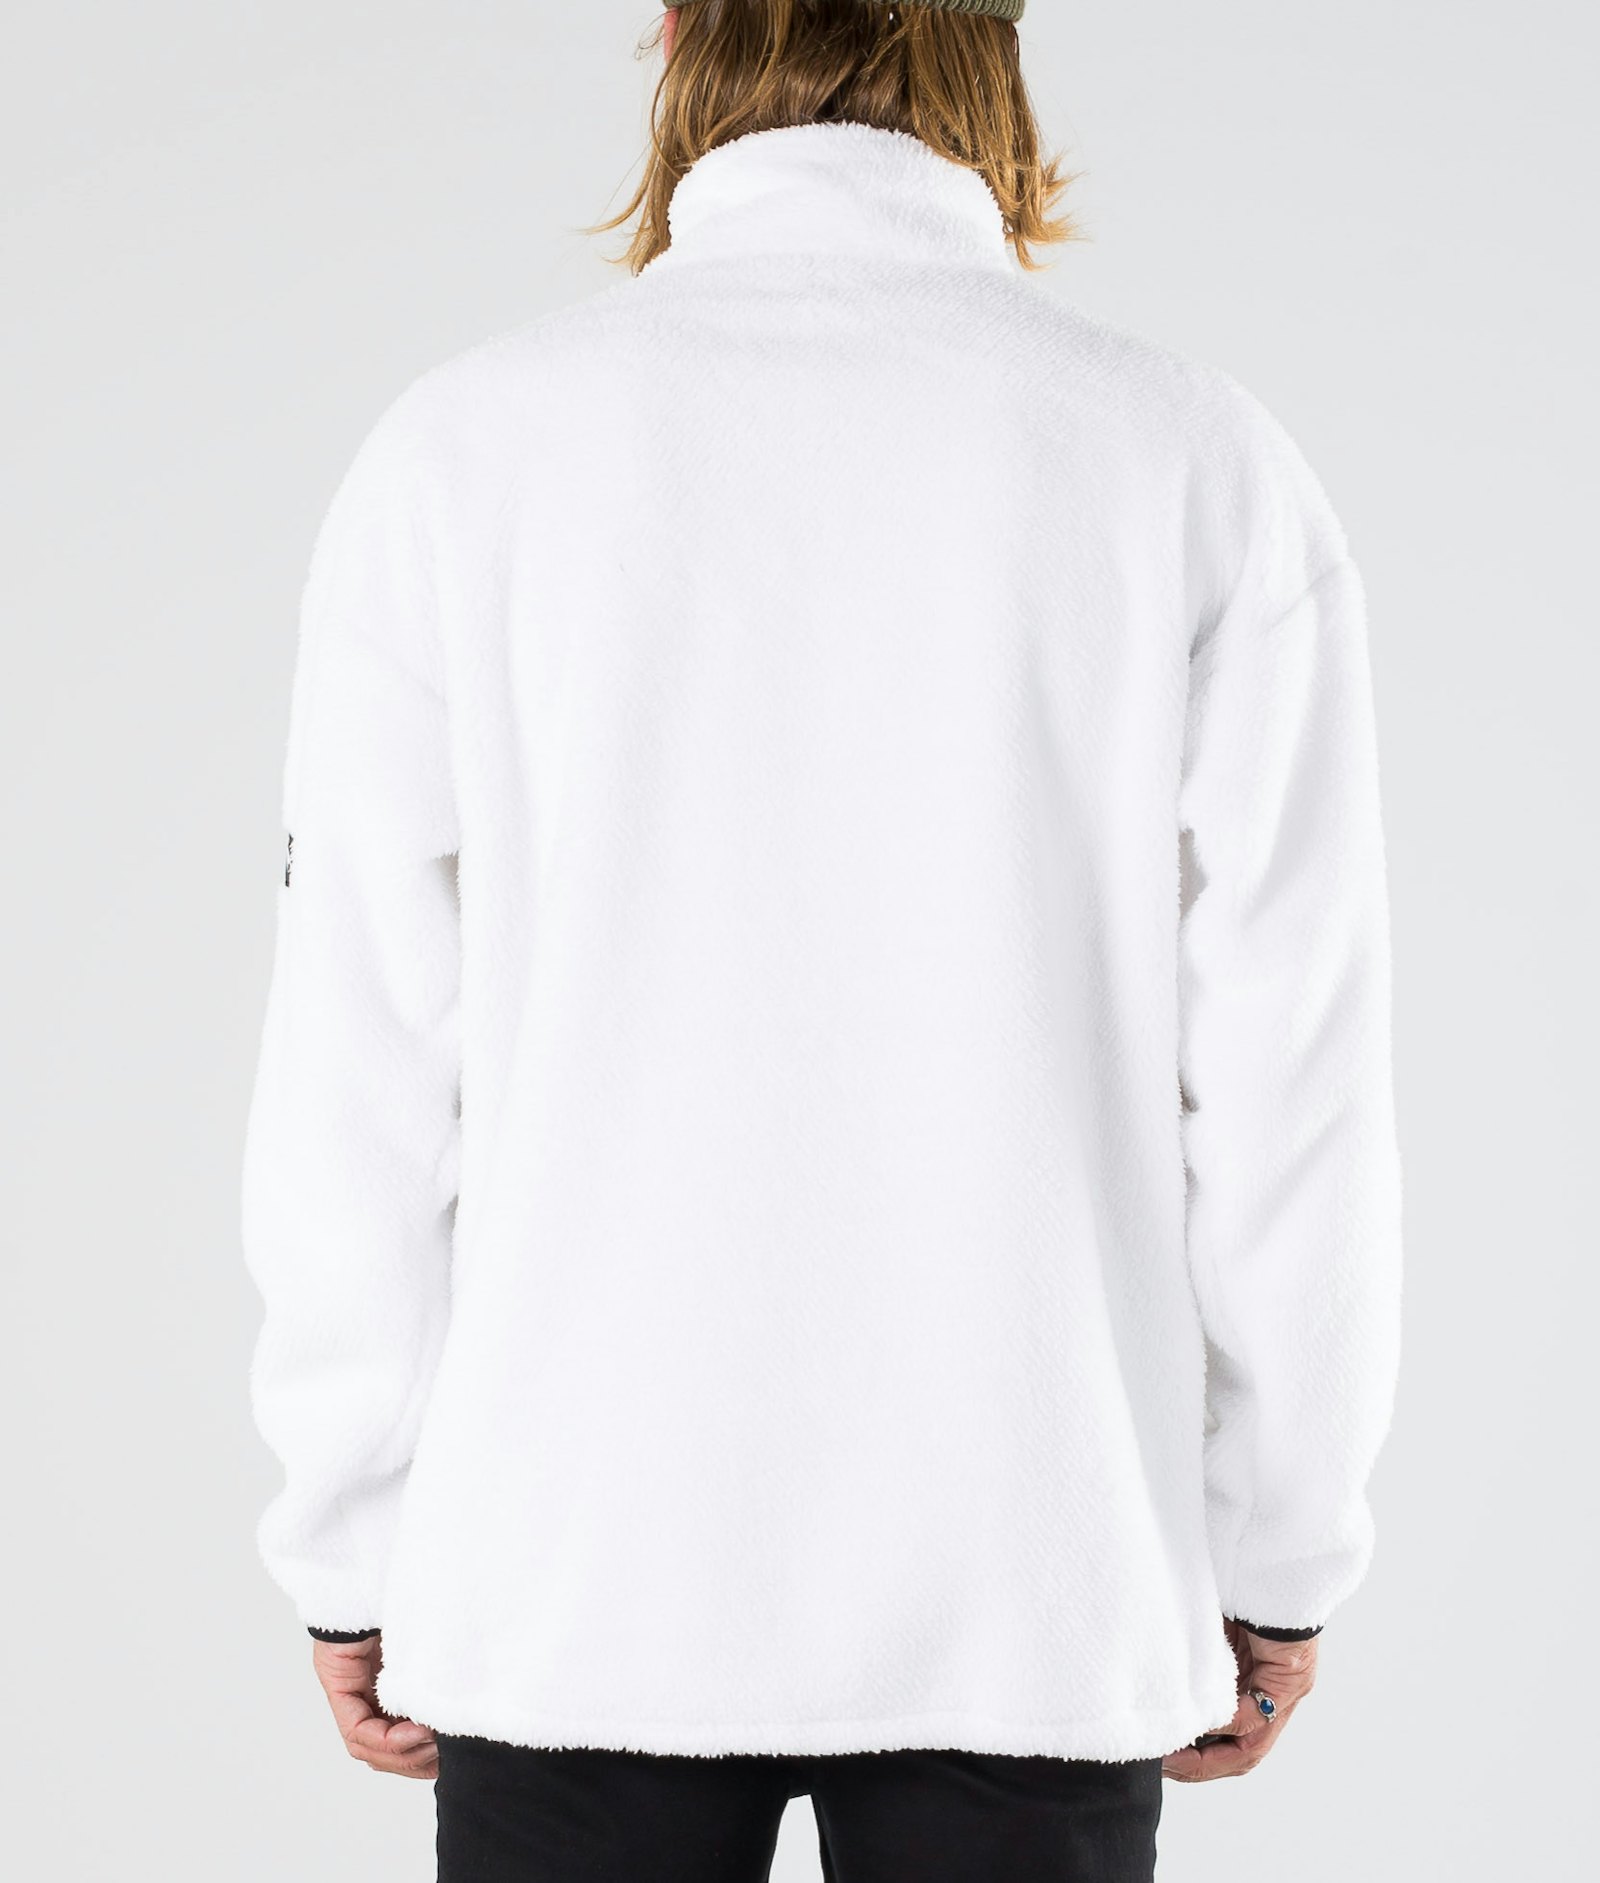 Pile 2019 Fleece Sweater Men White